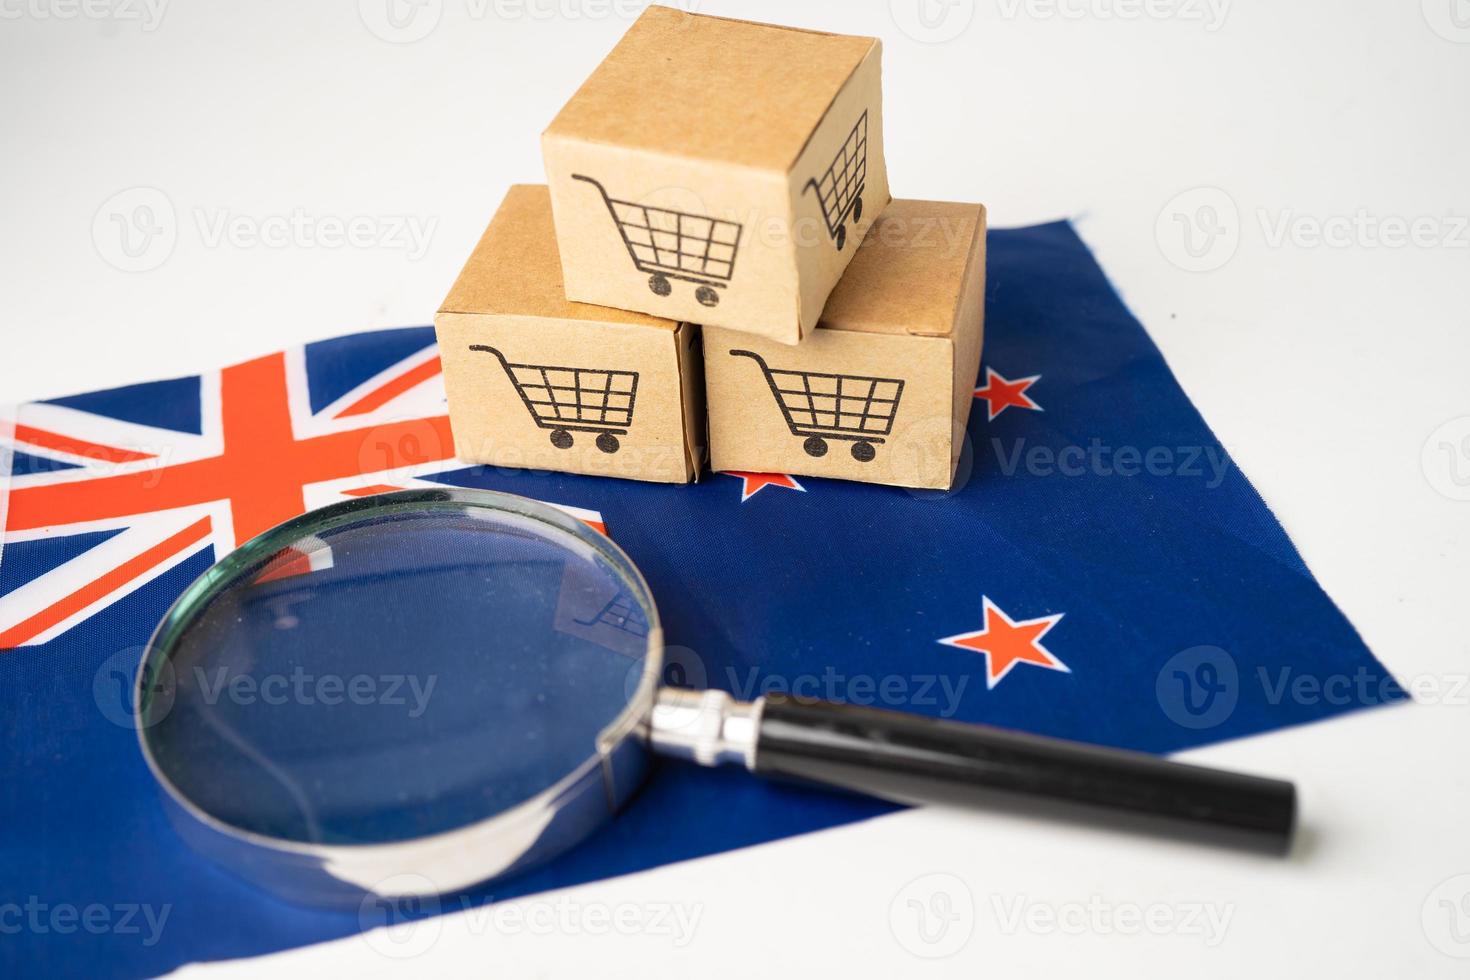 winkelwagentje-logo met de vlag van Nieuw-Zeeland, online winkelen import export e-commerce financiën bedrijfsconcept. foto